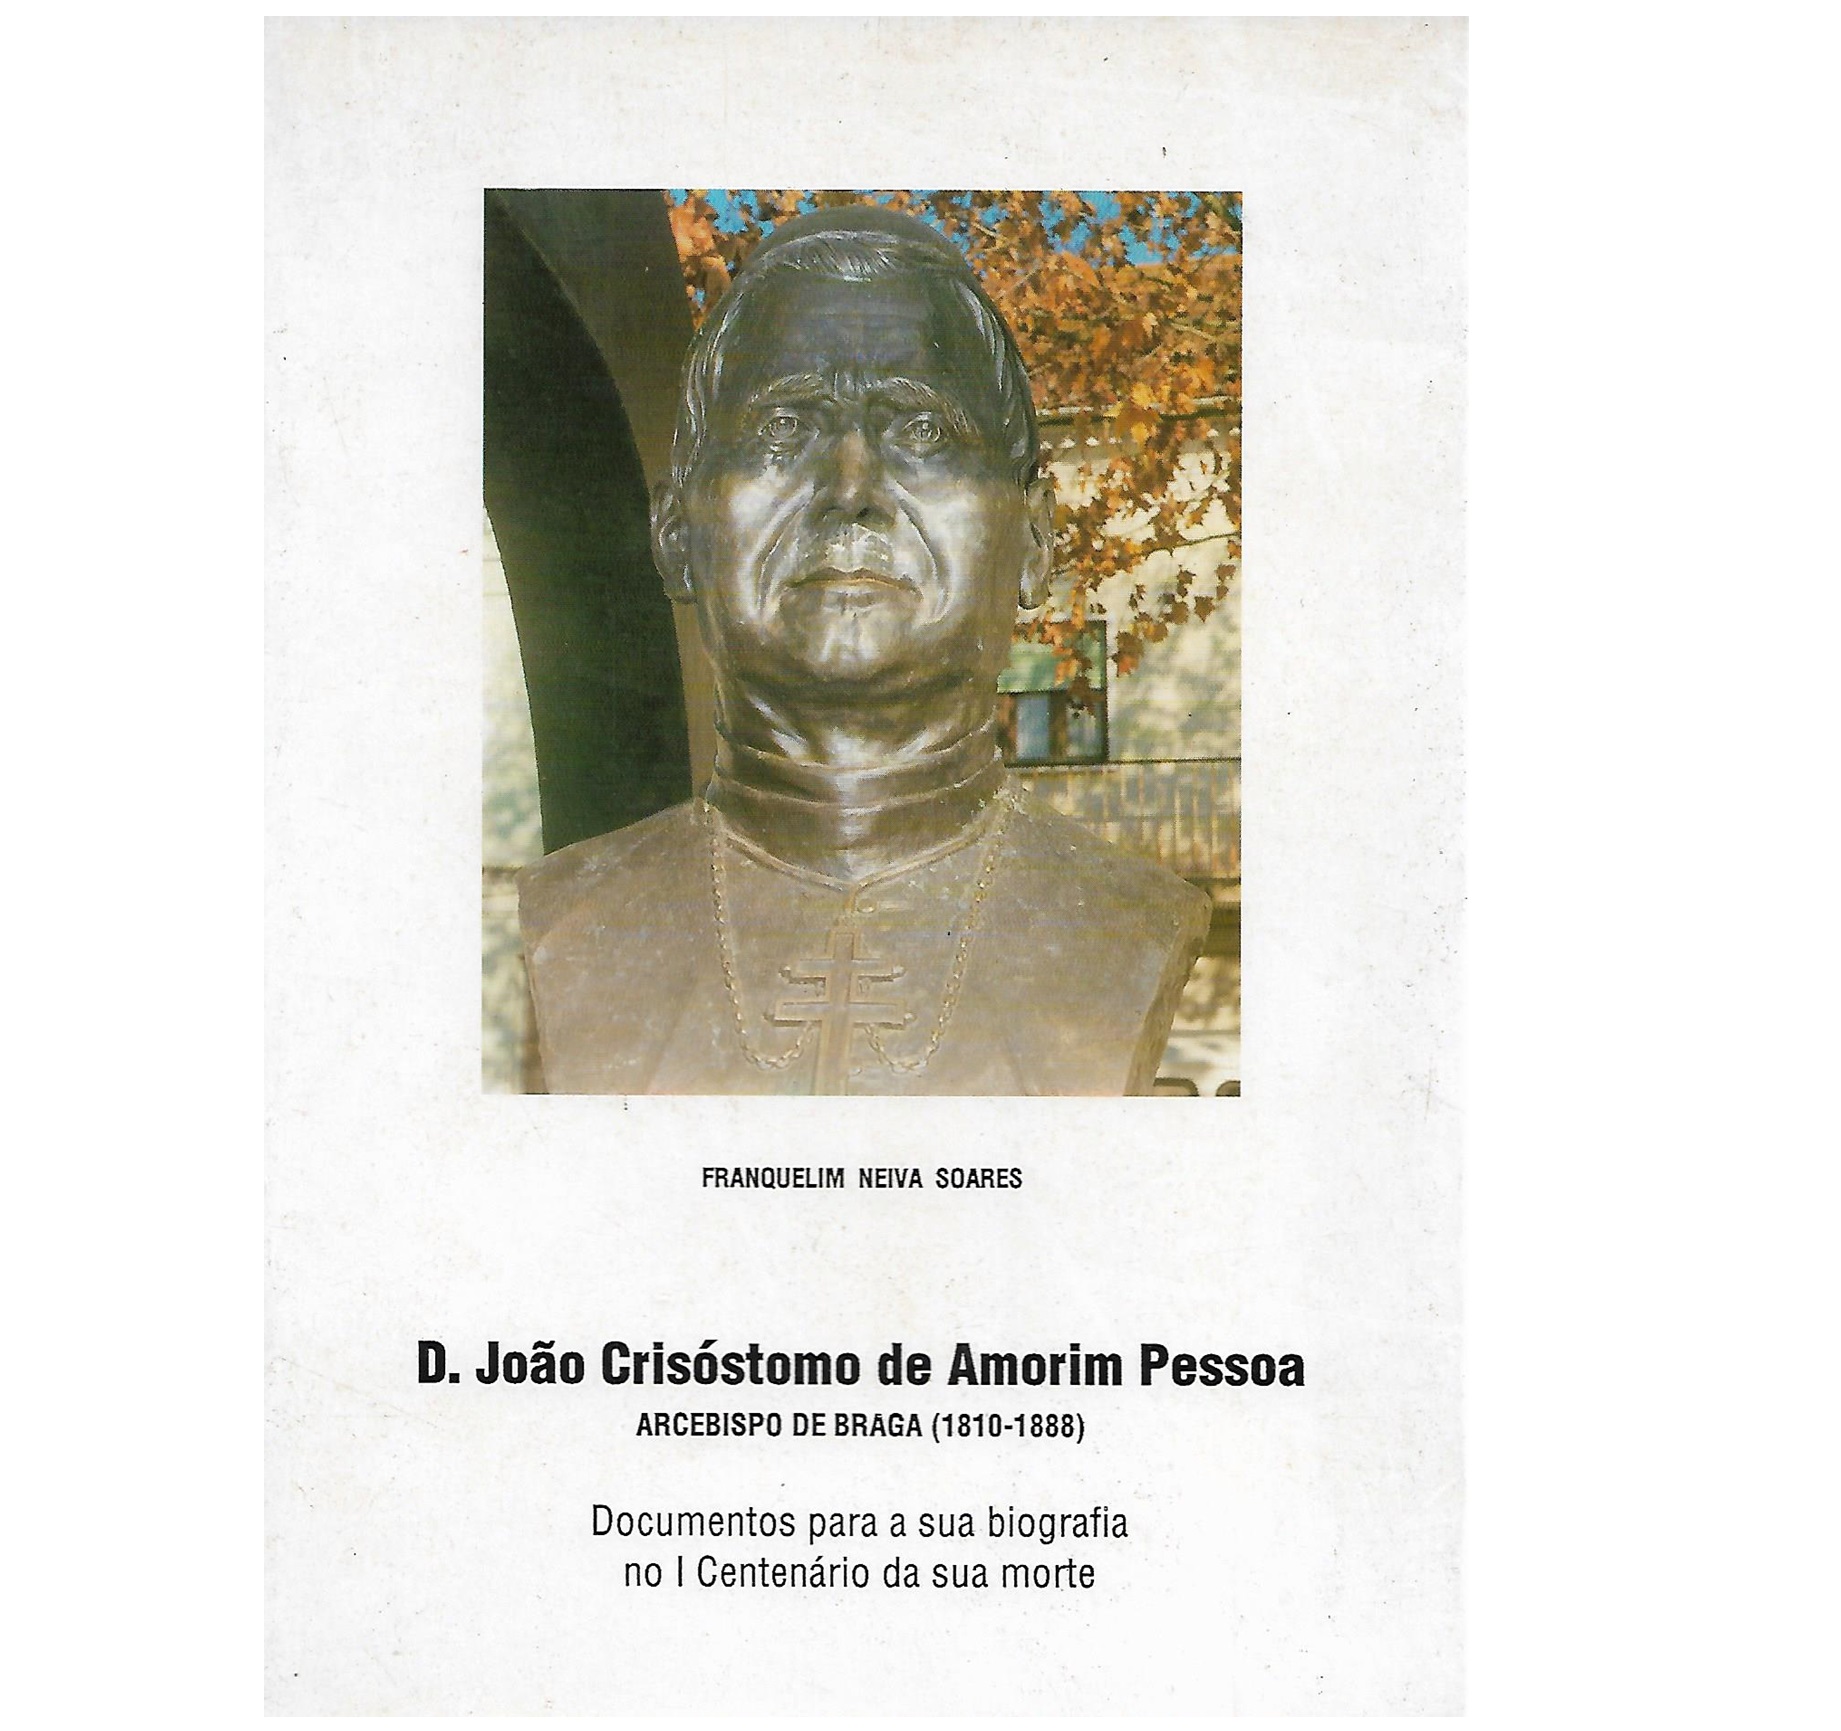 D. JOÃO CRISÓSTOMO DE AMORIM PESSOA